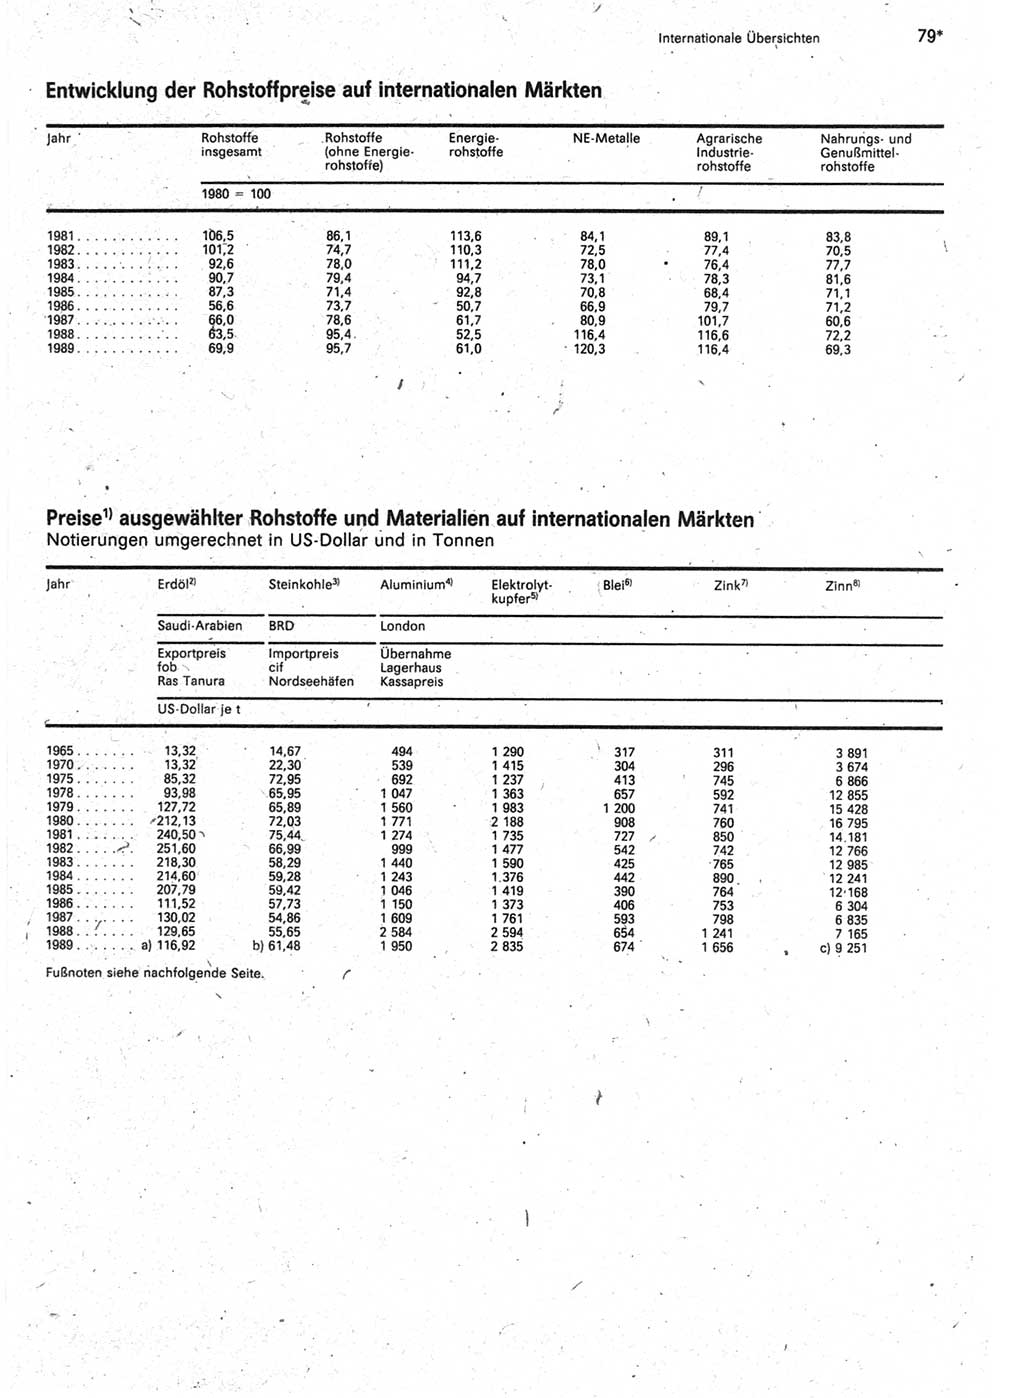 Statistisches Jahrbuch der Deutschen Demokratischen Republik (DDR) 1990, Seite 79 (Stat. Jb. DDR 1990, S. 79)